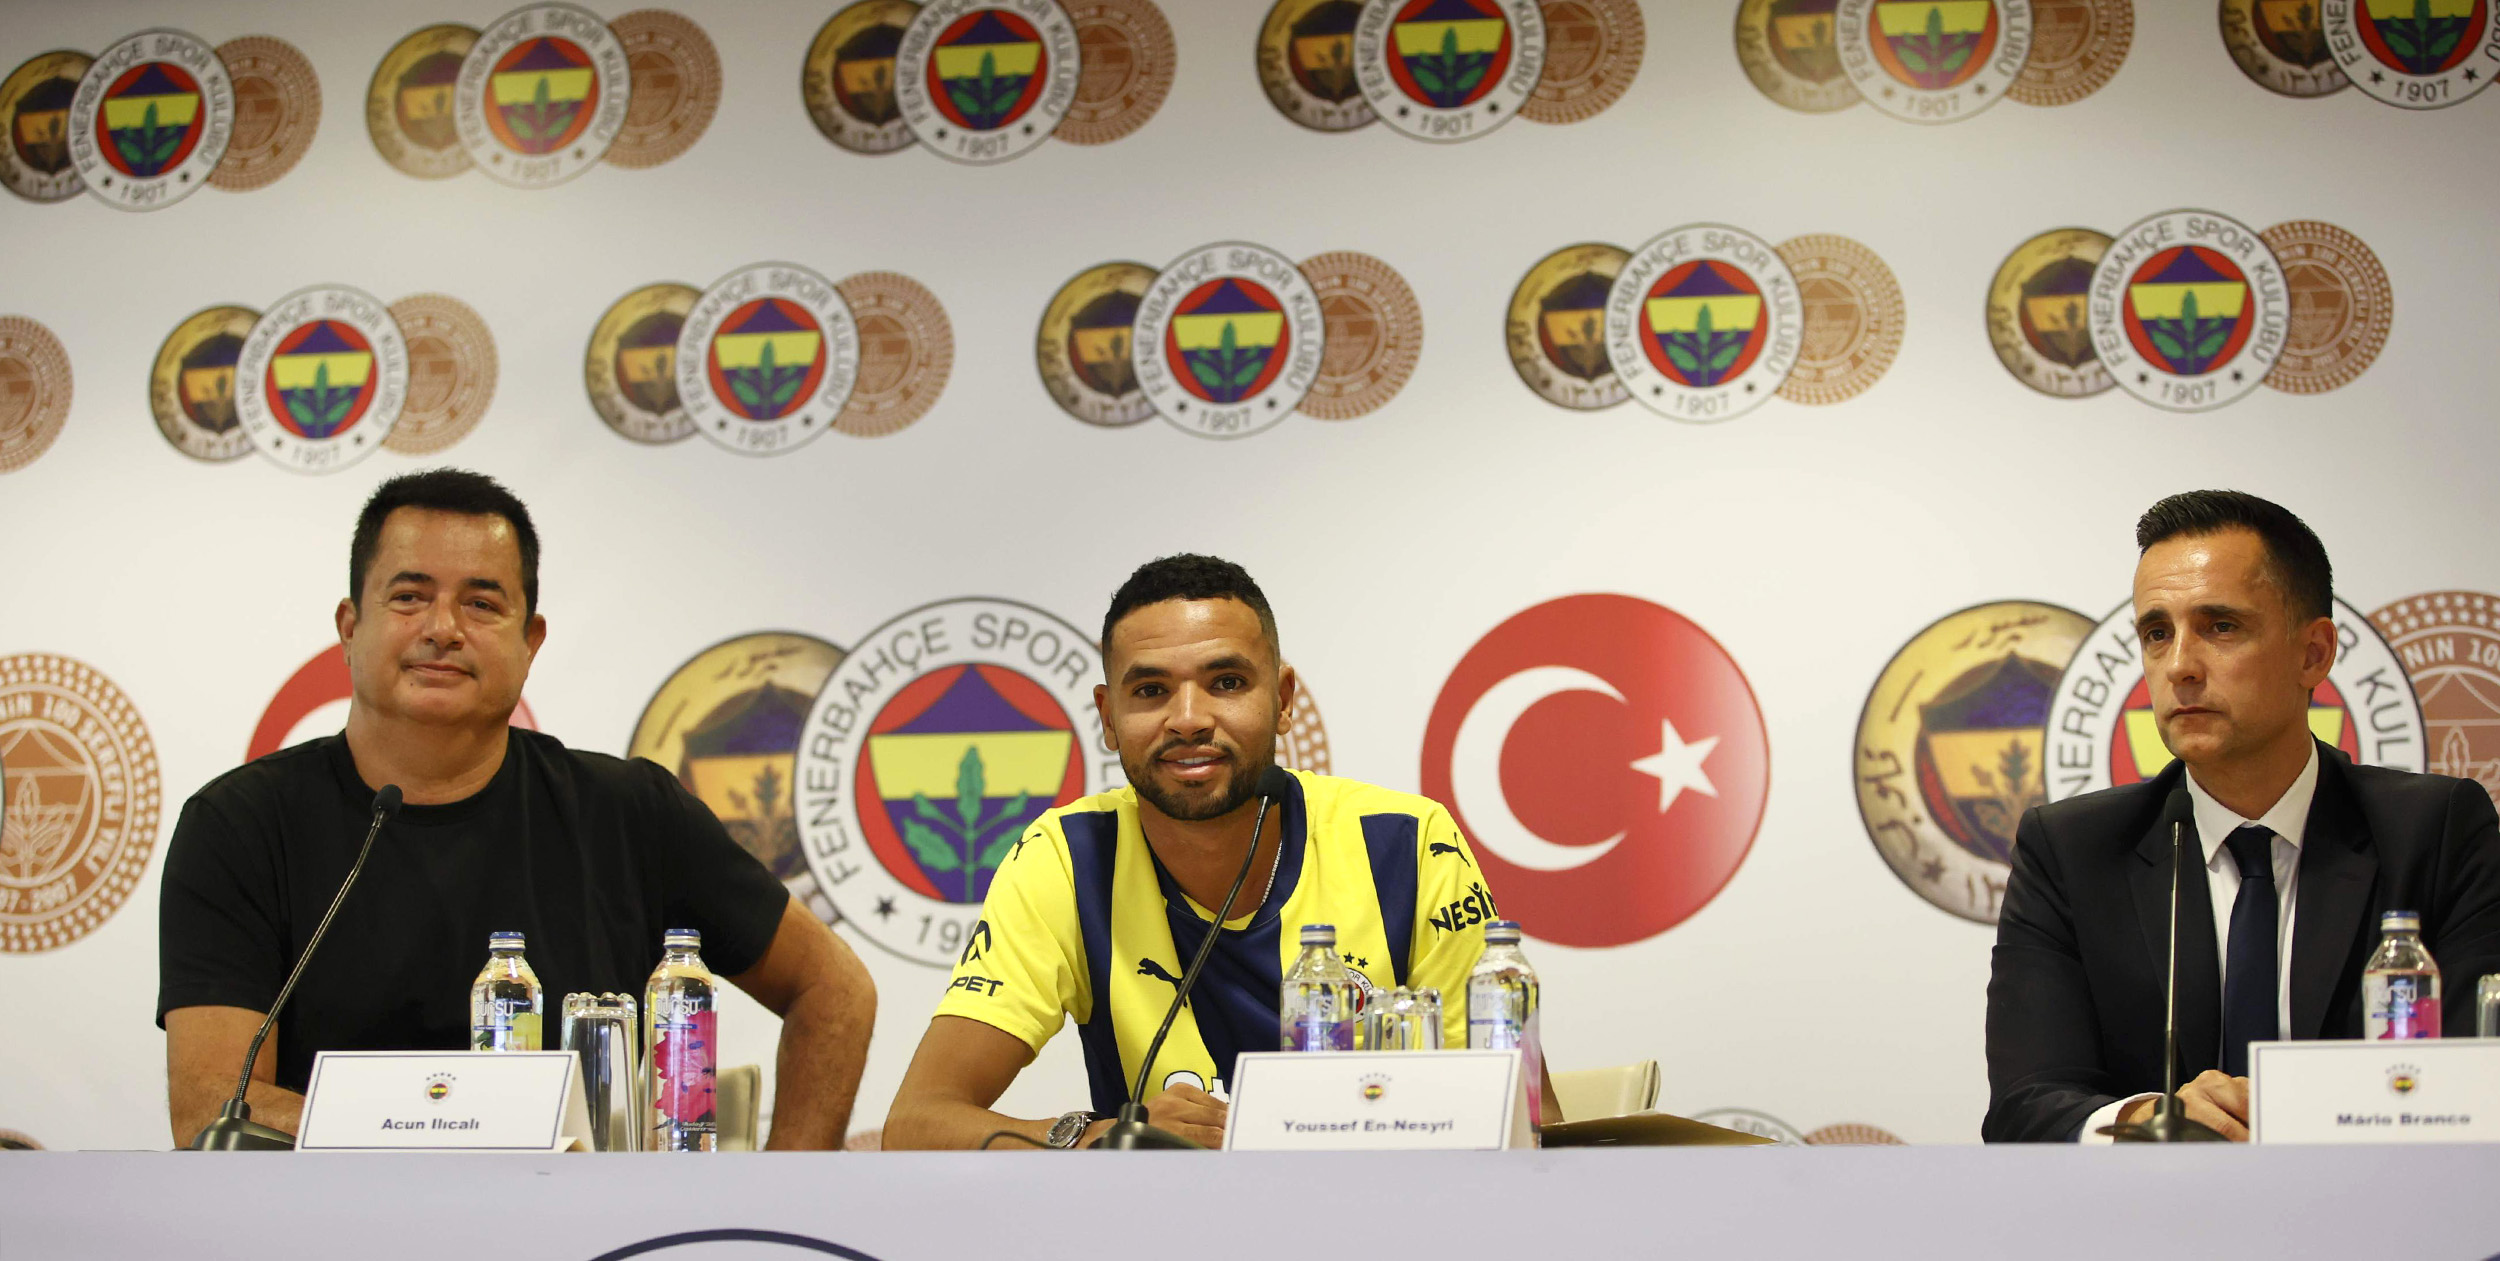 Fenerbahçe, Youssef En-Nesyri ile 5 yıllık sözleşme imzaladı